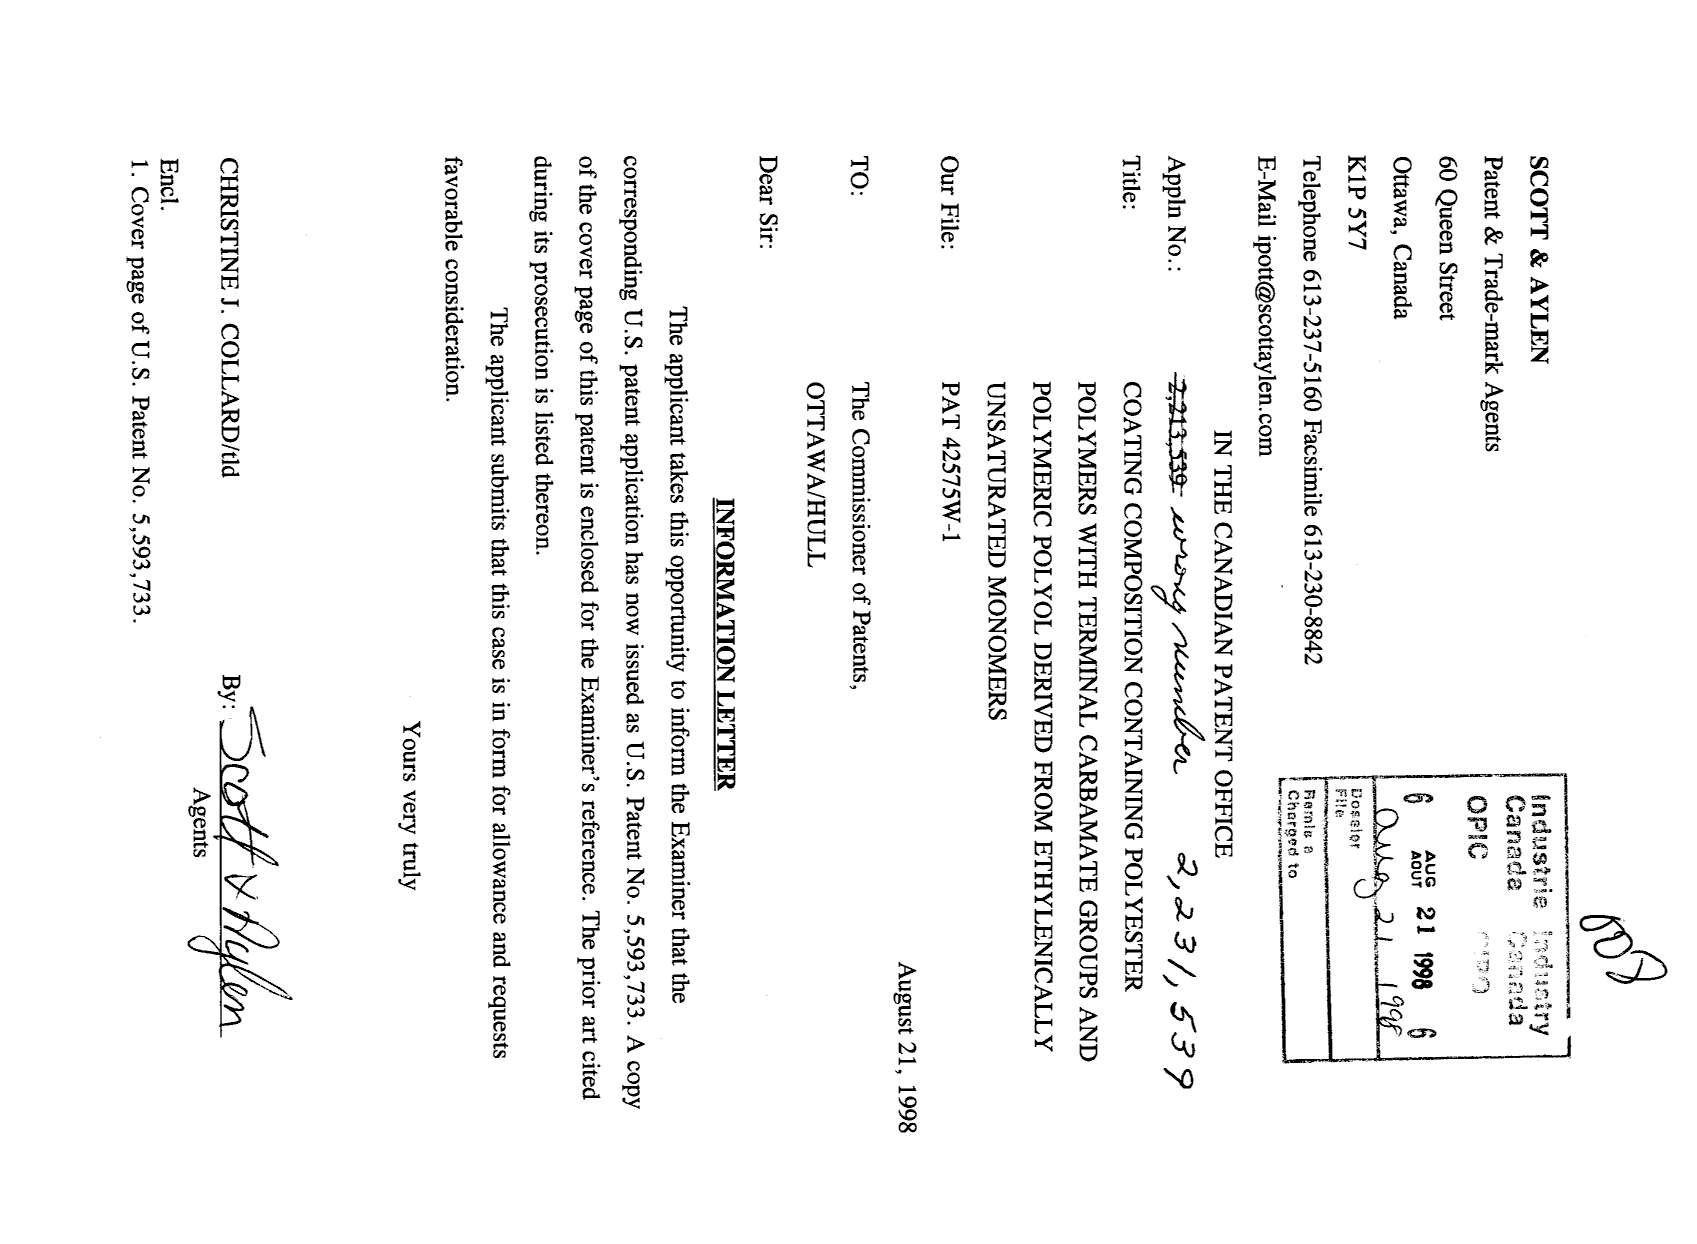 Document de brevet canadien 2231539. Poursuite-Amendment 19980821. Image 1 de 2